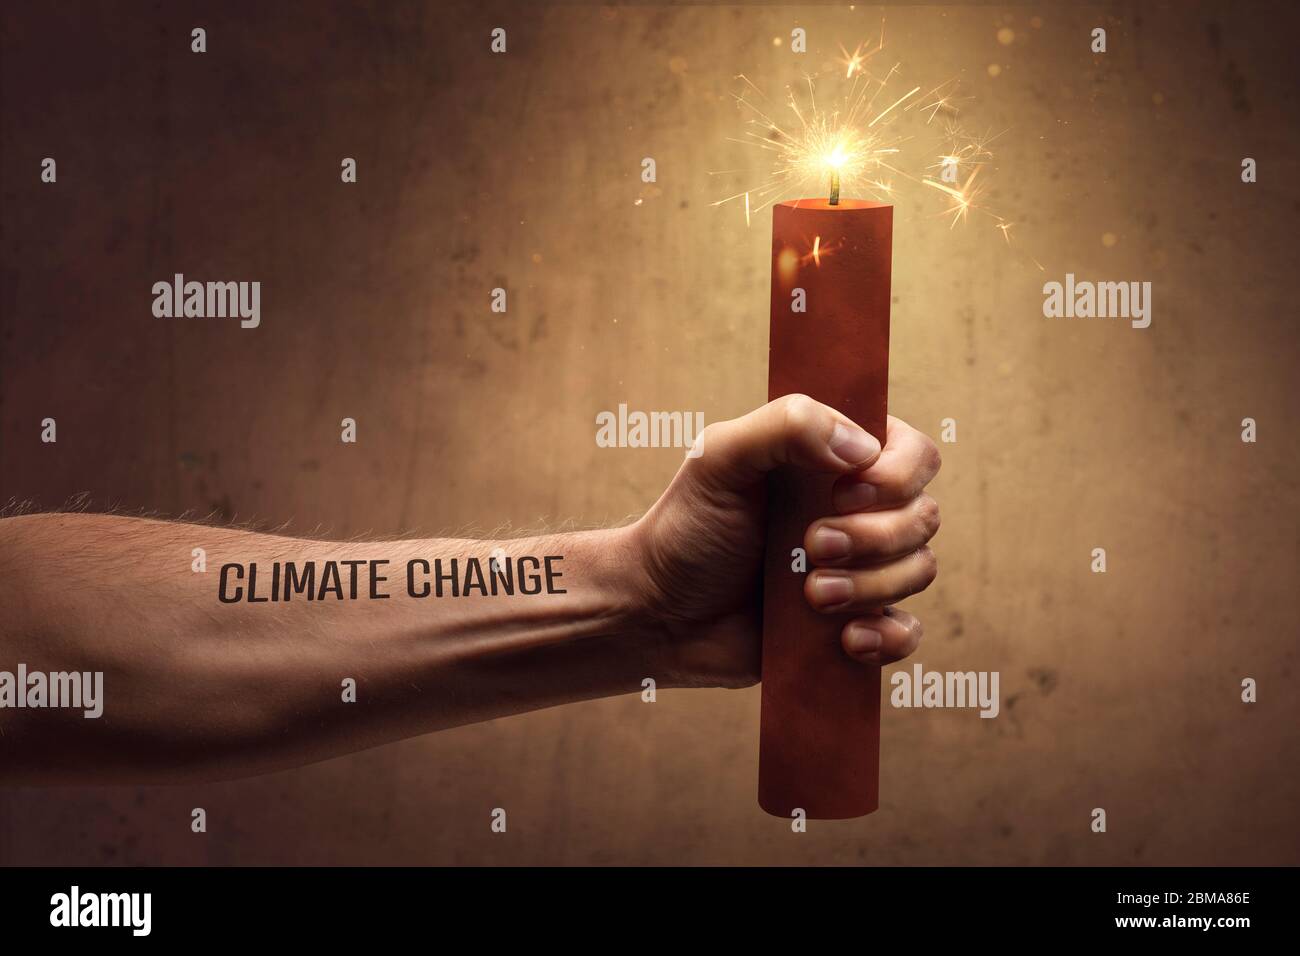 El cambio climático es un concepto peligroso Foto de stock